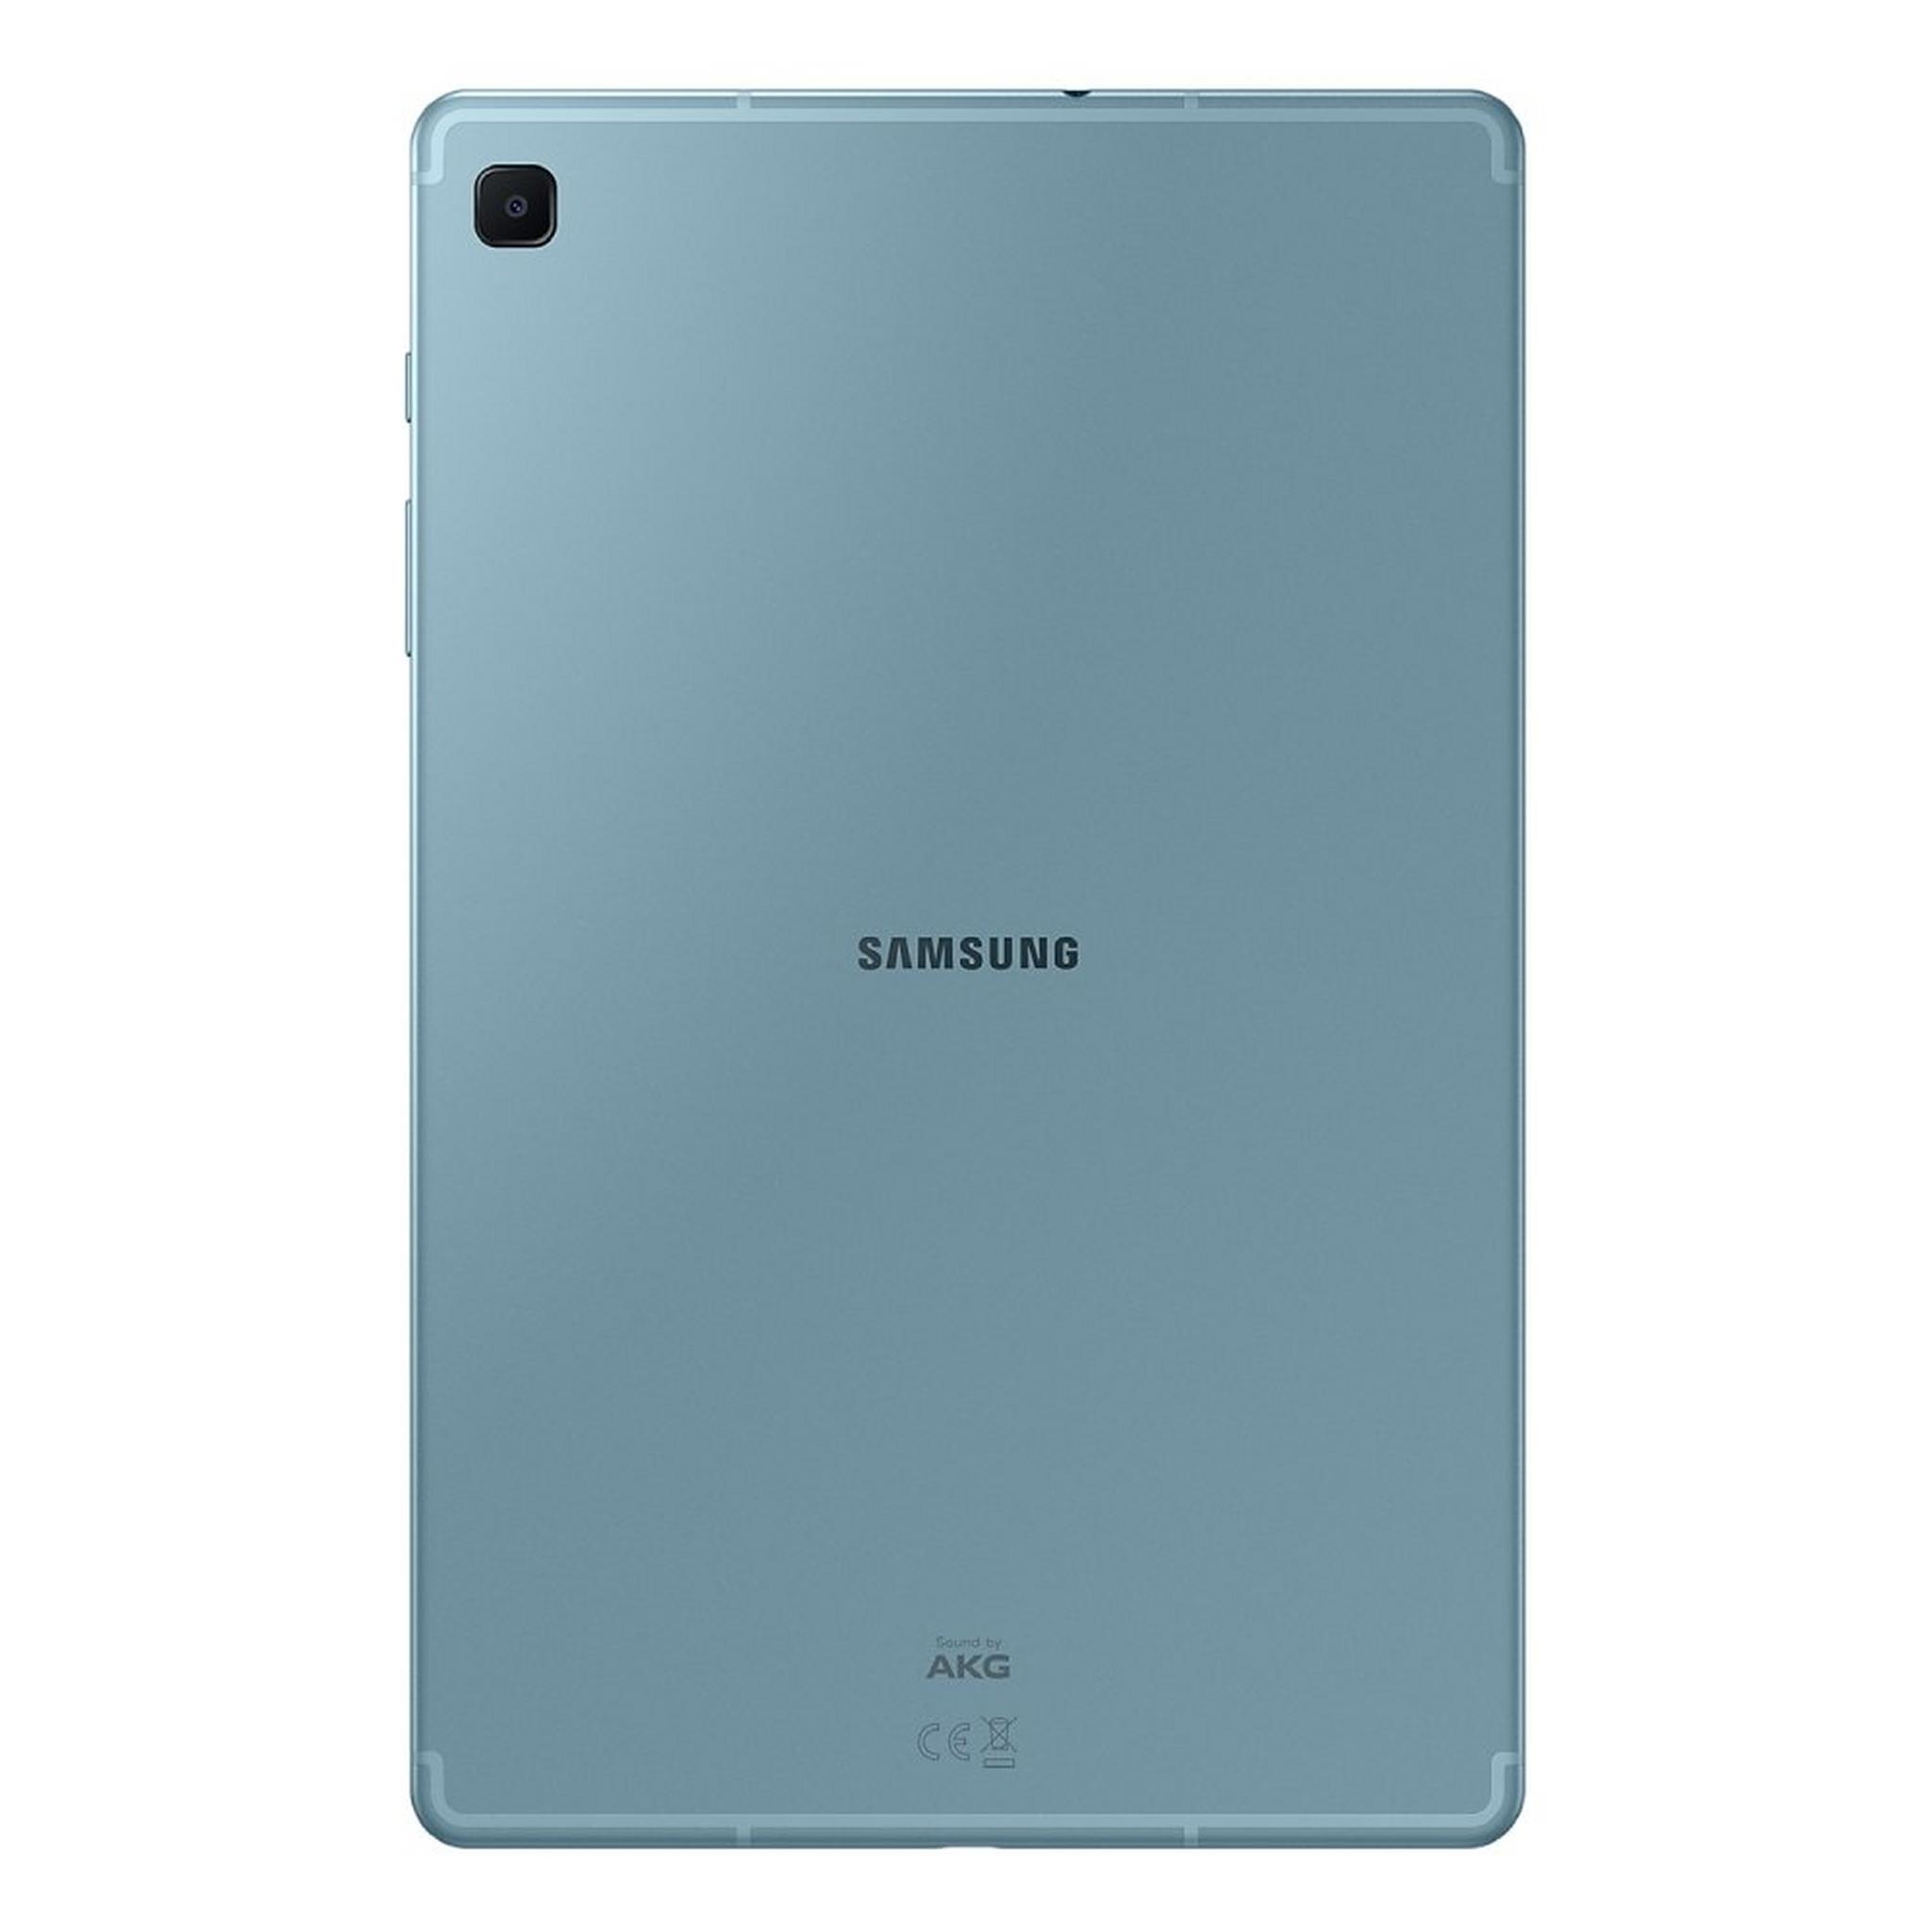 Samsung Galaxy TAB S6 Lite (2022) 64GB, 10.4-inch Wi-Fi Tablet - Blue